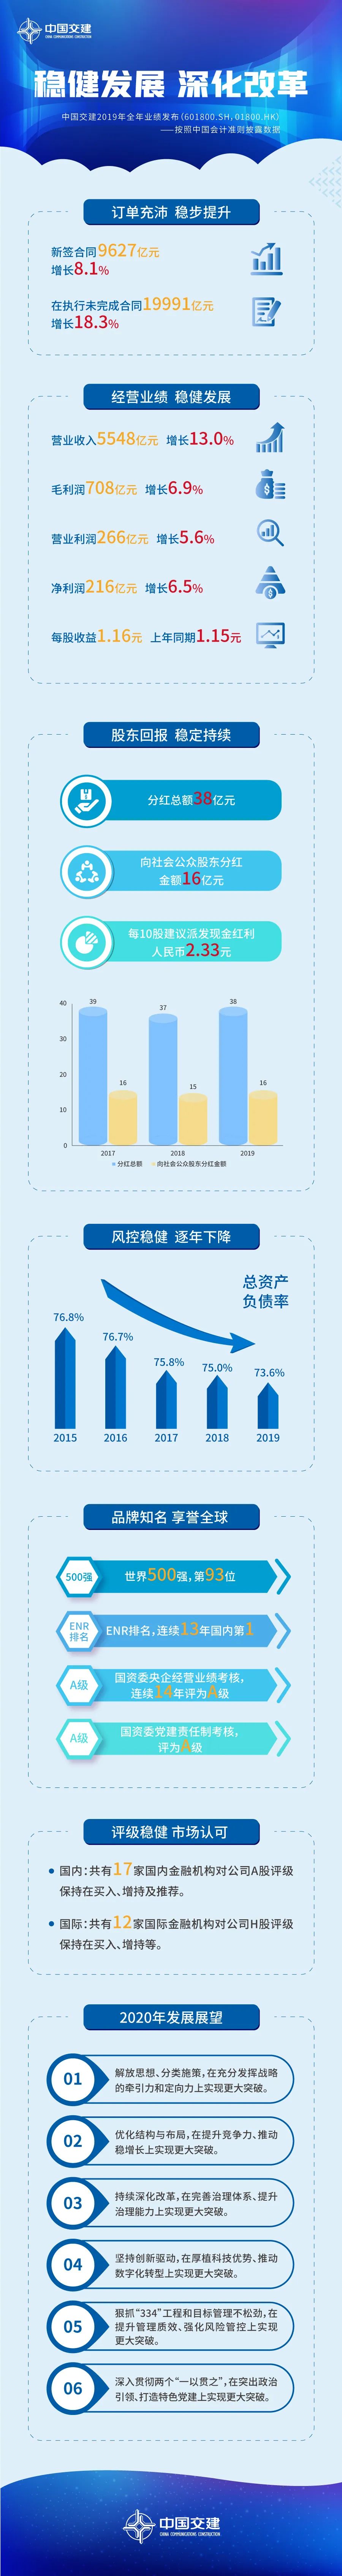 一图看懂中国交建2019年度业绩